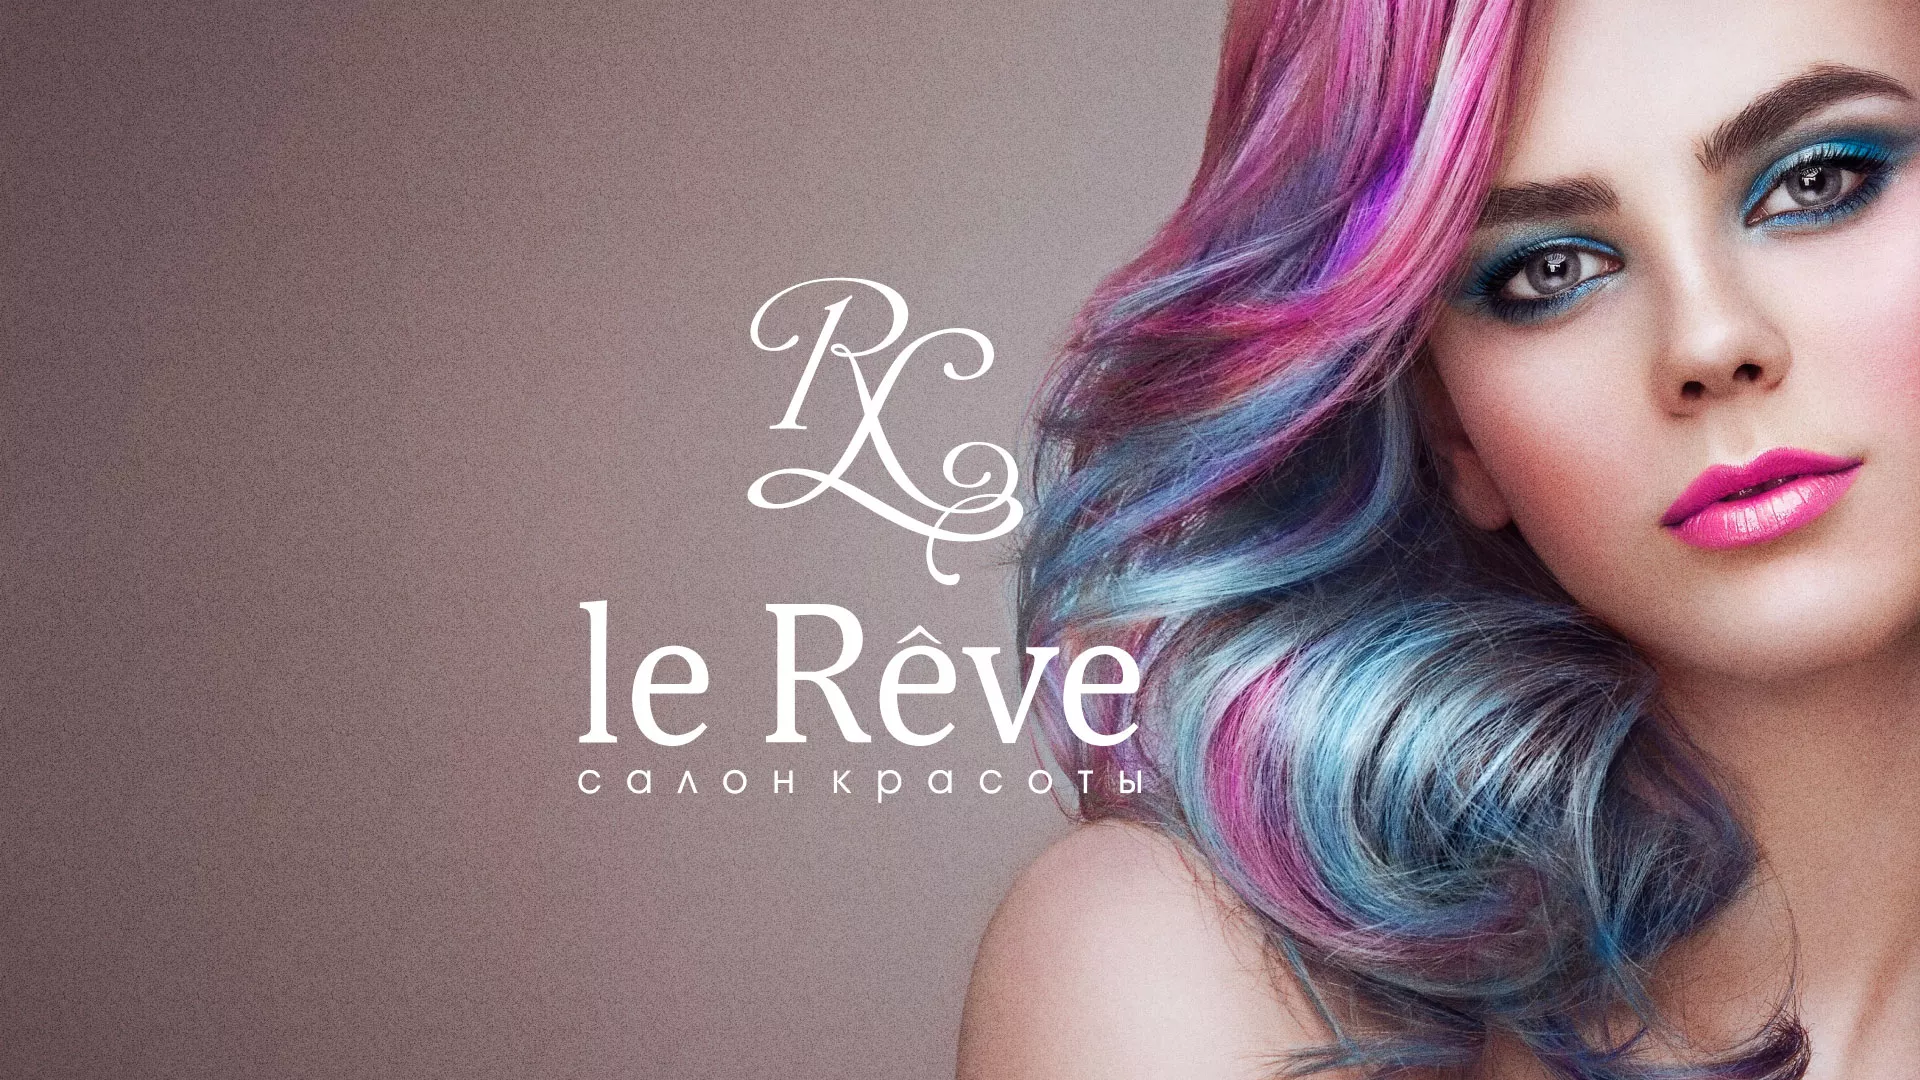 Создание сайта для салона красоты «Le Reve» в Таре